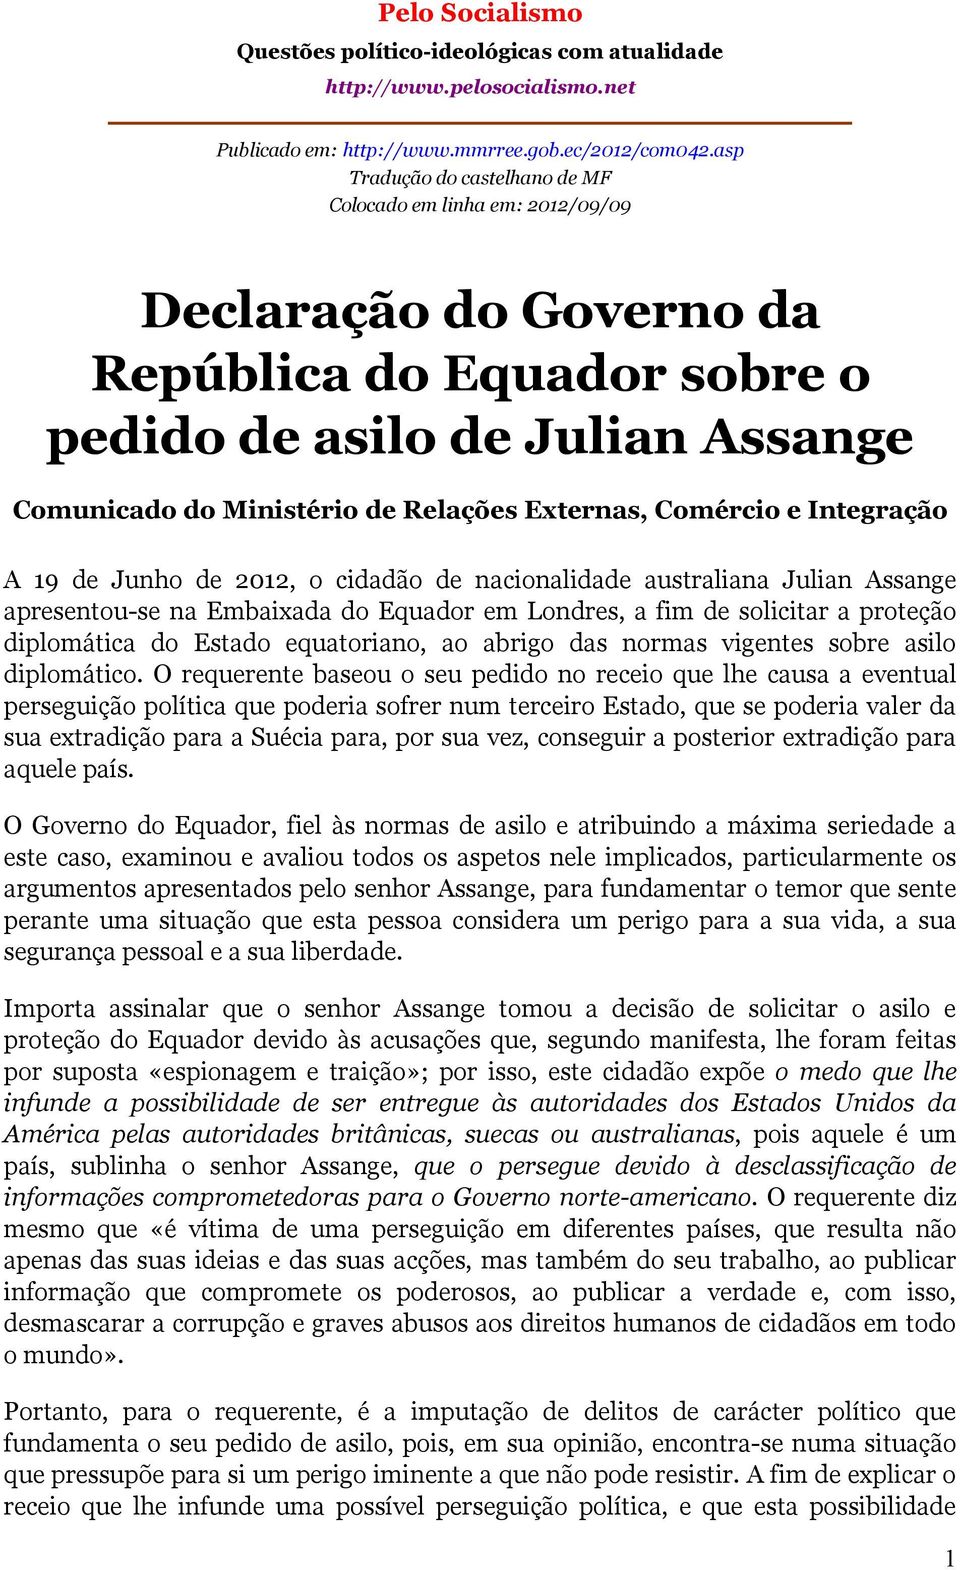 Externas, Comércio e Integração A 19 de Junho de 2012, o cidadão de nacionalidade australiana Julian Assange apresentou-se na Embaixada do Equador em Londres, a fim de solicitar a proteção